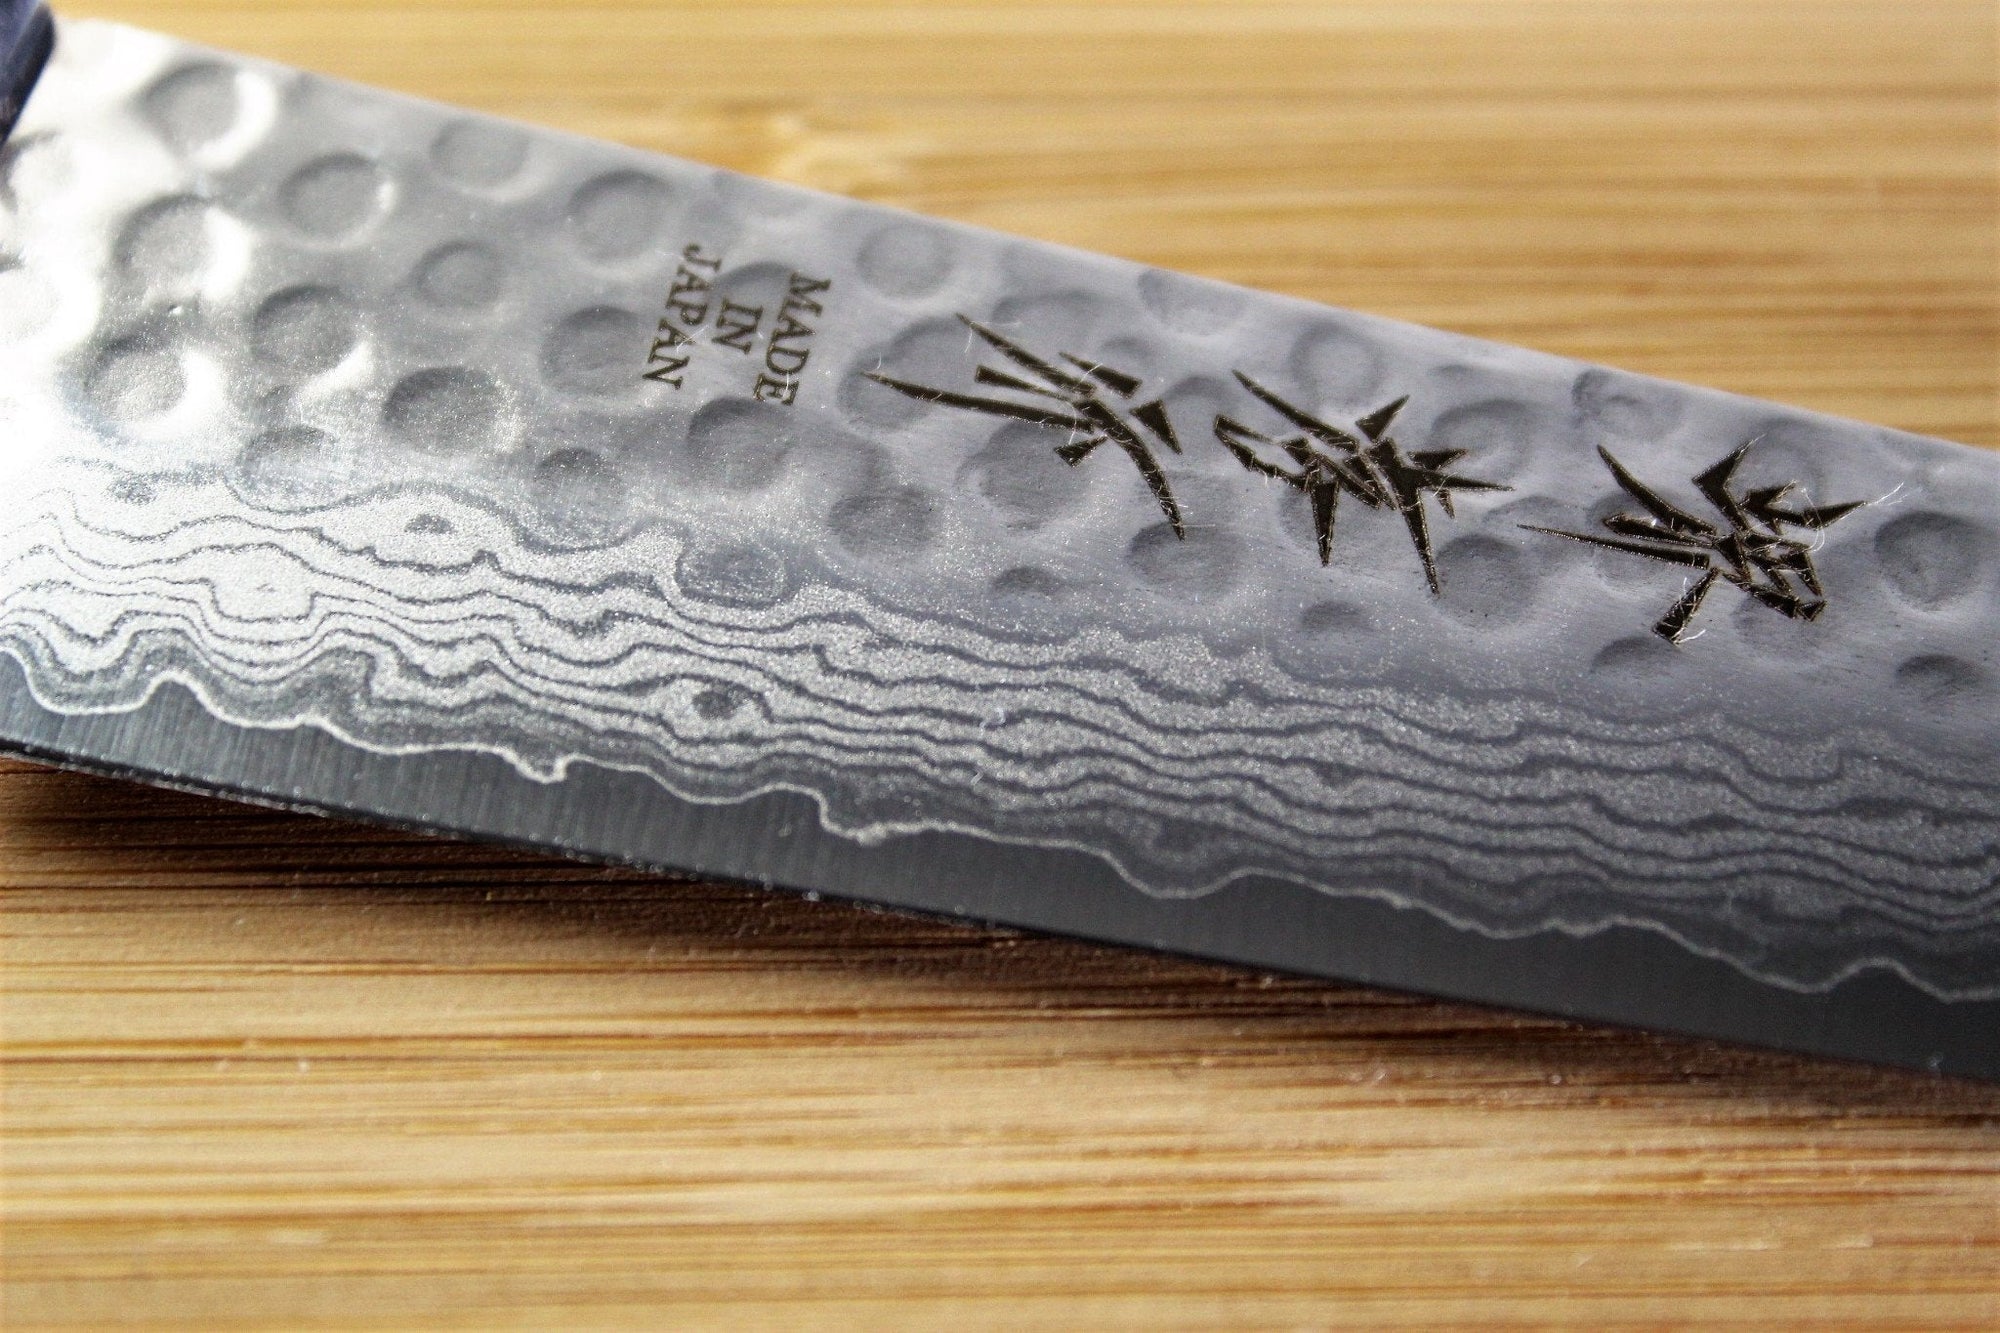 Kitchen Knives - Sakai Takayuki Petty Knife 135mm (5.3") Damascus 17 Layer